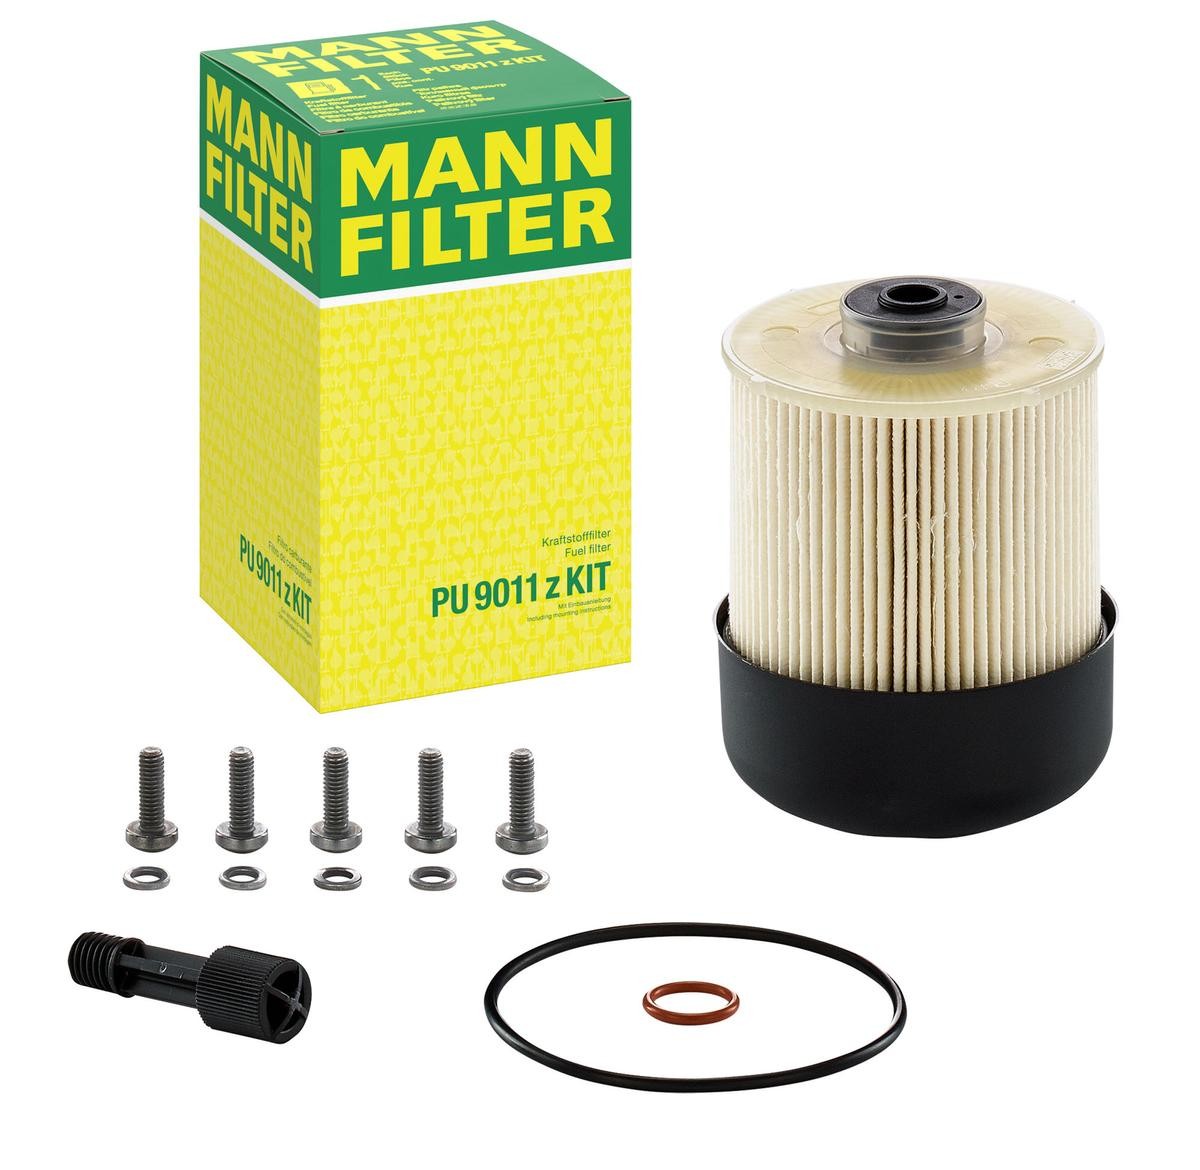 PU 9011 z KIT MANN-FILTER Kraftstofffilter Filtereinsatz, mit Dichtung PU  9011 z KIT ❱❱❱ Preis und Erfahrungen